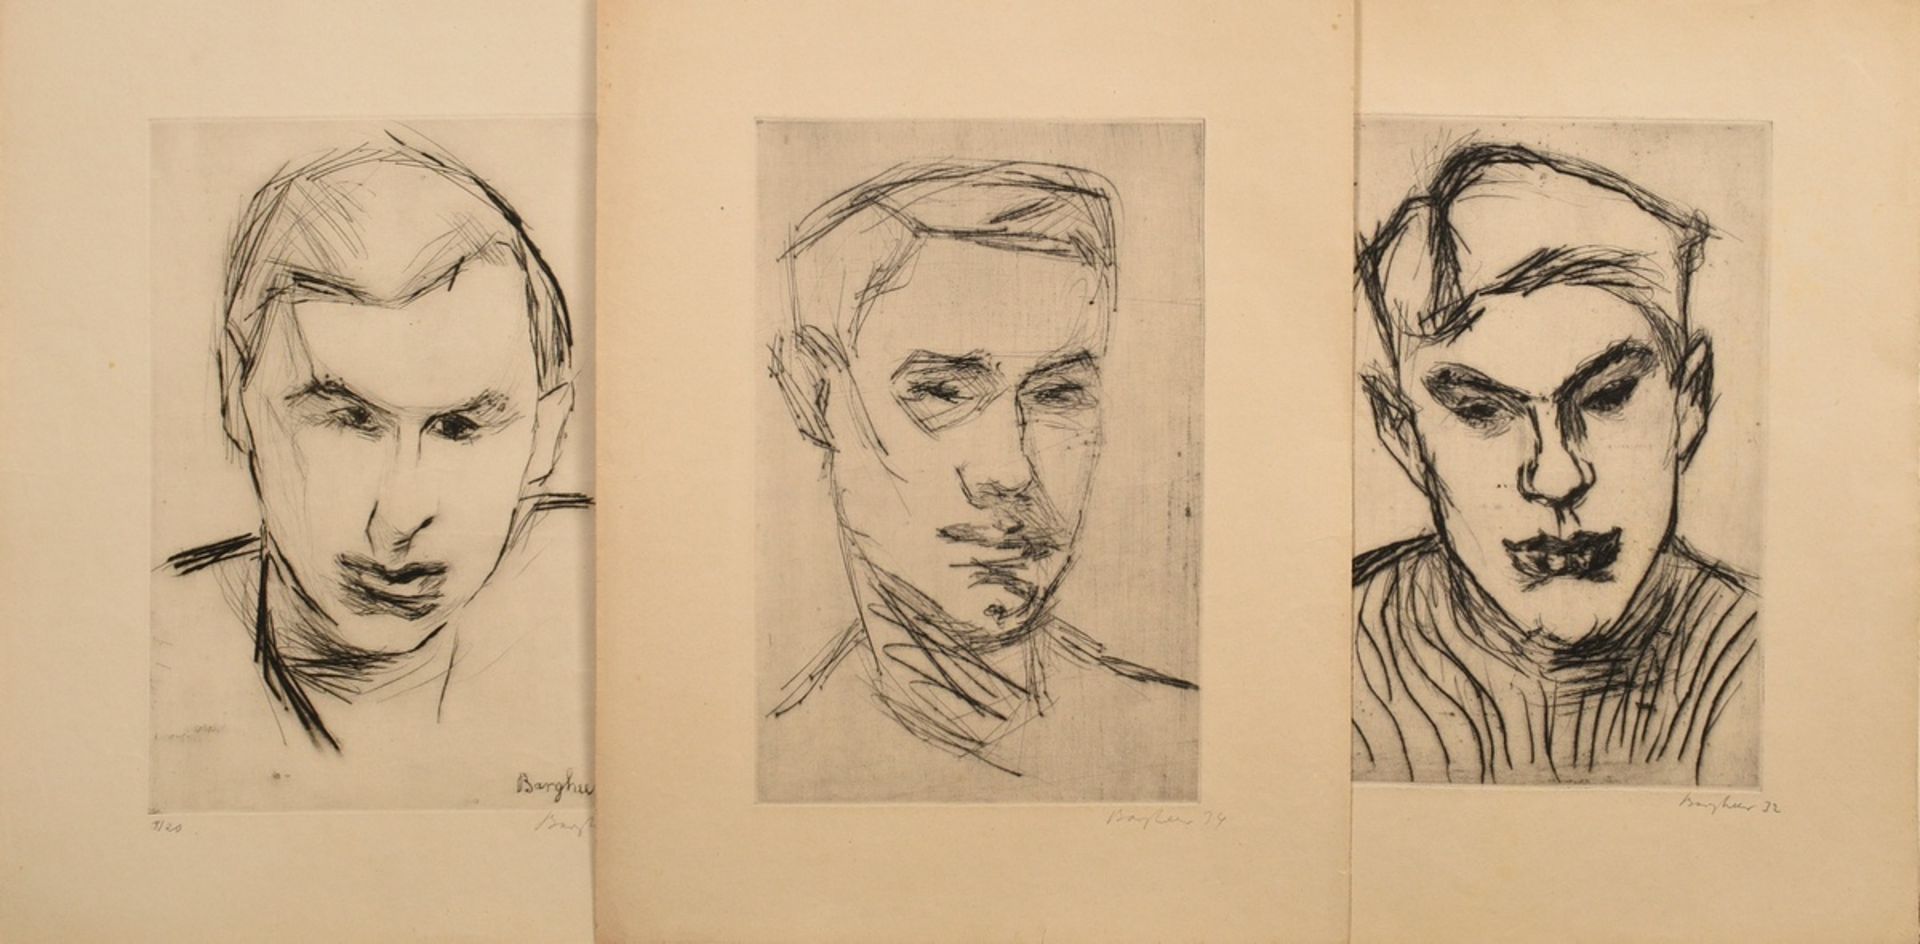 3 Bargheer, Eduard (1901-1979) "Herren-Portraits" (1x Selbst?) 1932/1934, etchings, 8/20, b.r. each